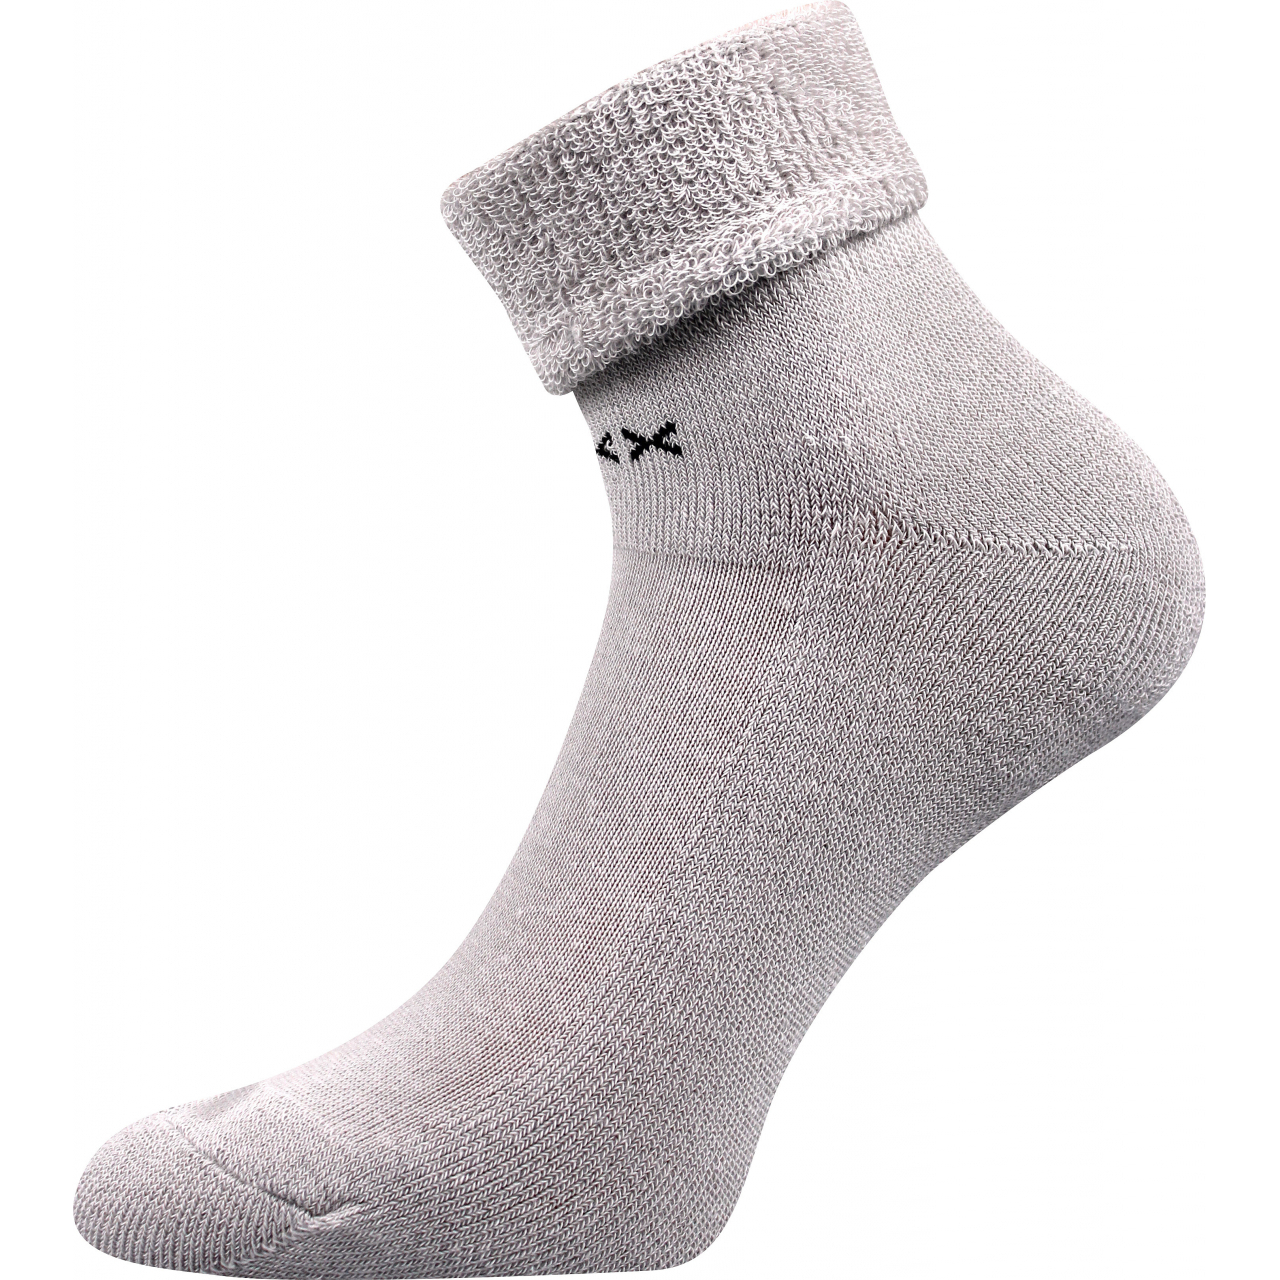 Ponožky dámské vysoké Voxx Fifu - světle šedé, 35-38